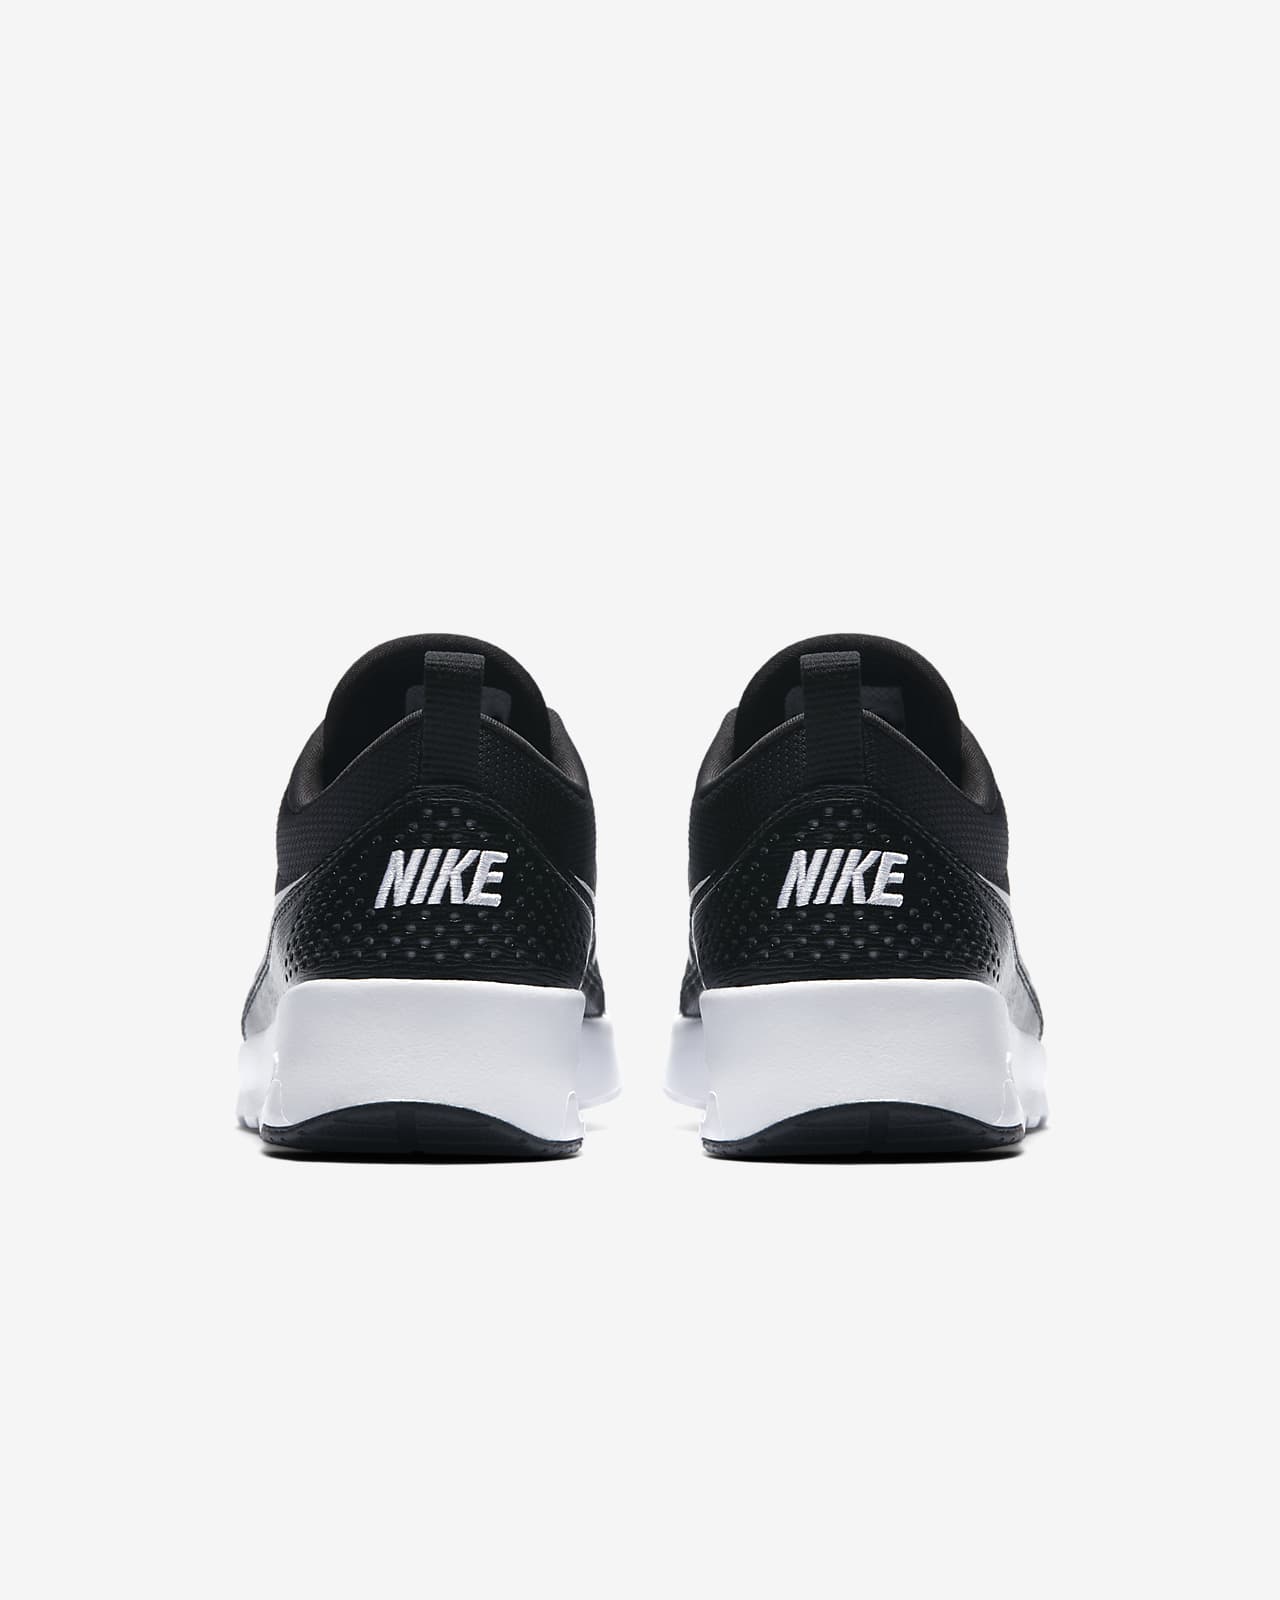 Nike Air Max Thea Women's Shoe